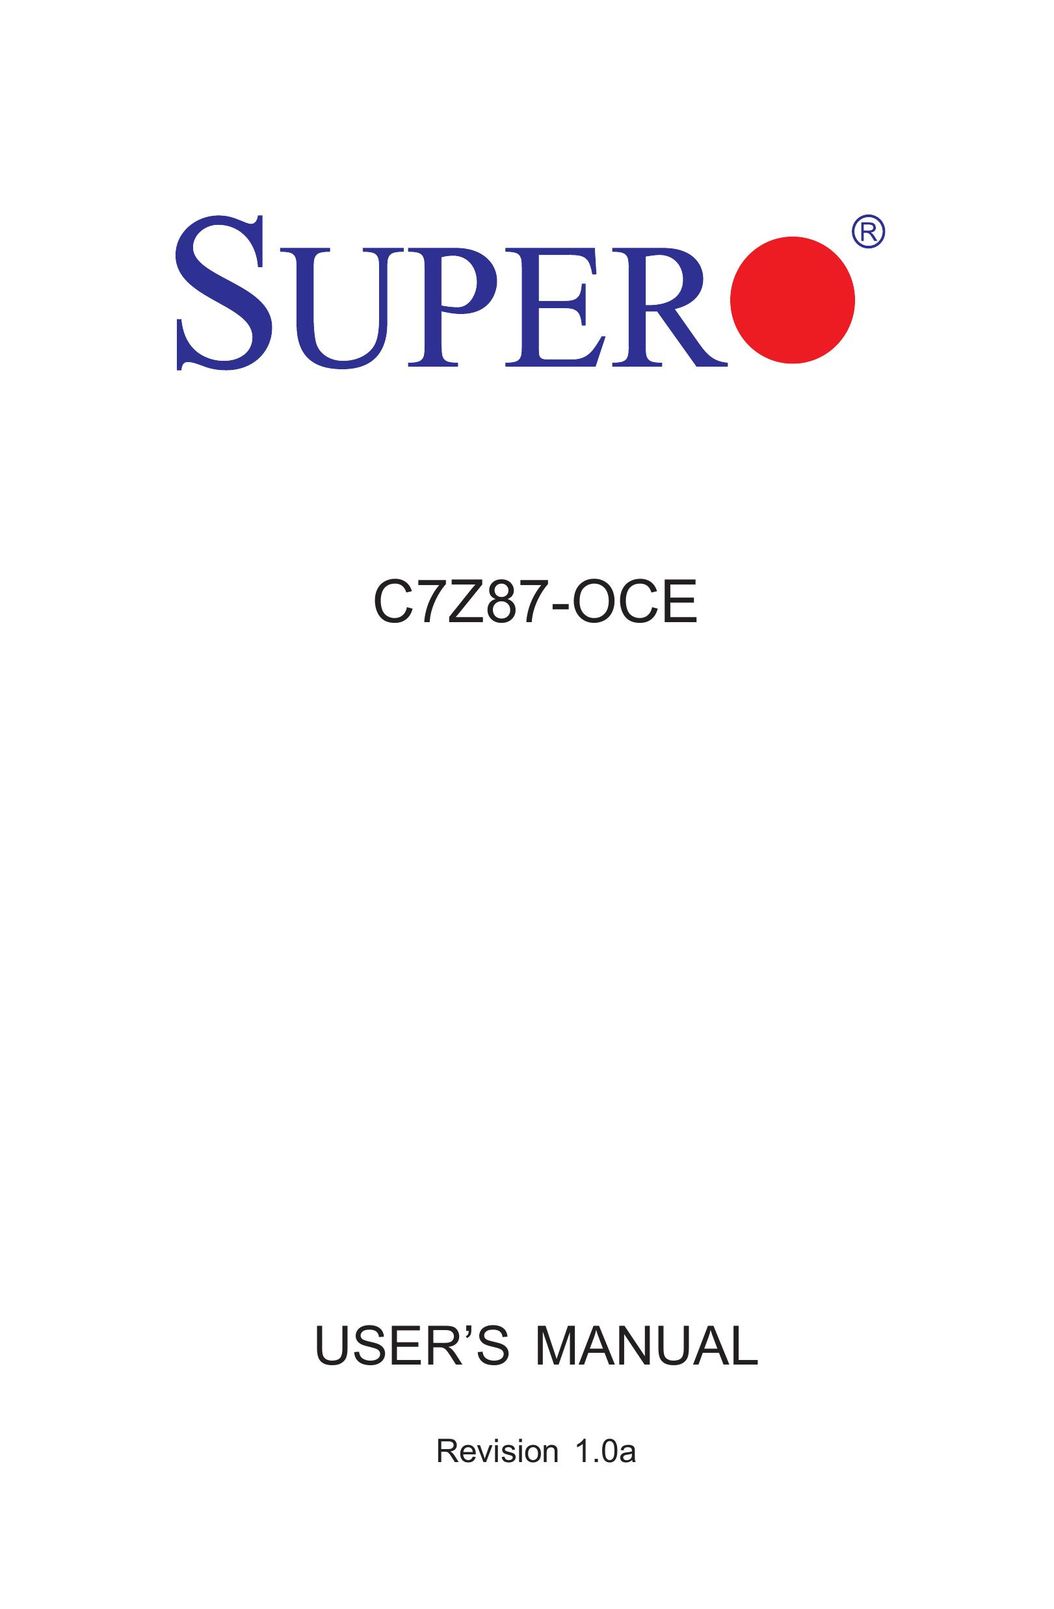 SUPER MICRO Computer C7Z87-OCE Computer Hardware User Manual